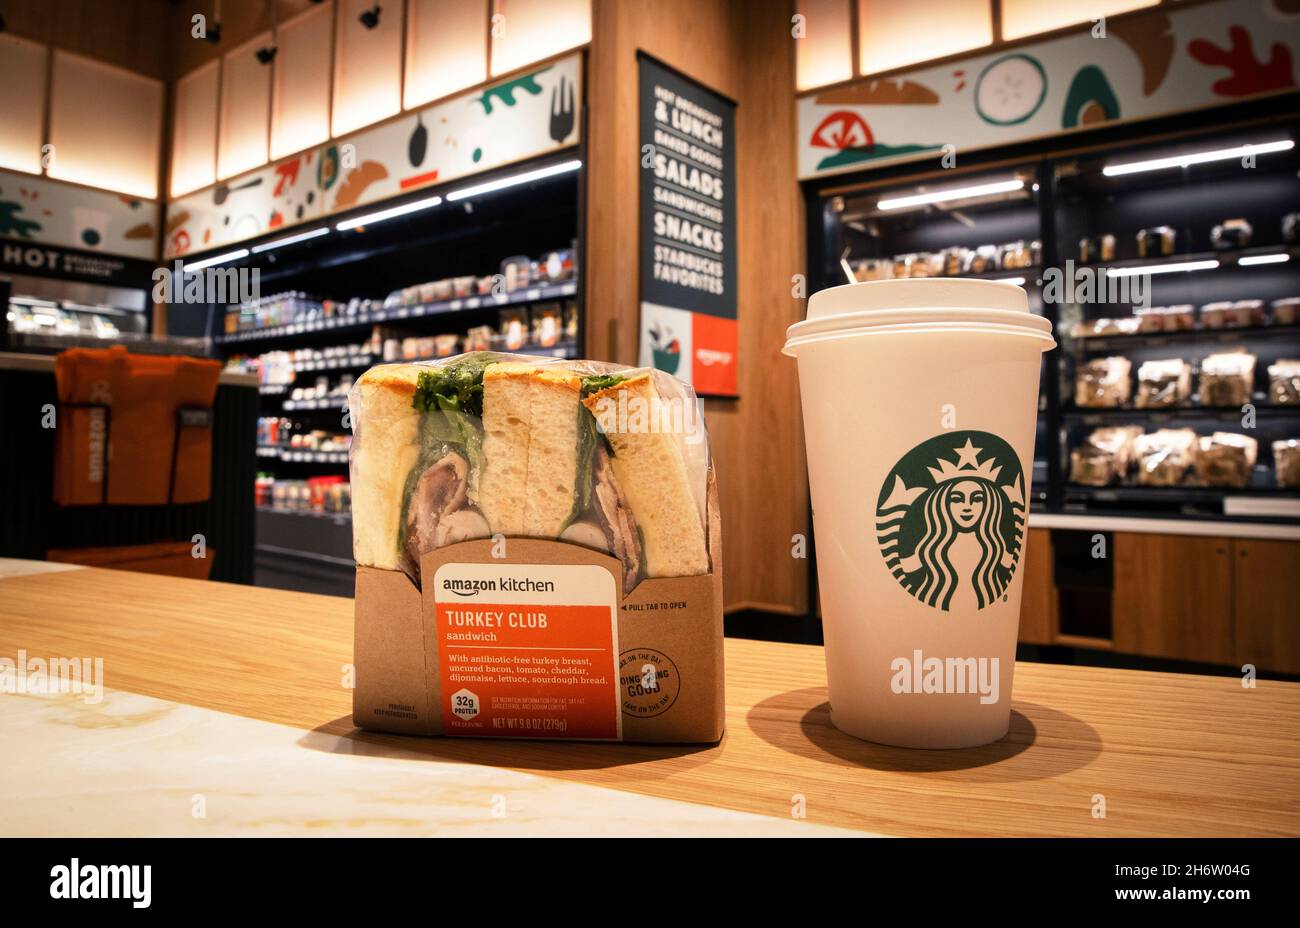 I prodotti Starbucks e Amazon Kitchen vengono esposti insieme in un nuovo  punto vendita Starbucks, il primo in assoluto in collaborazione con Amazon  Go che consente ai clienti di effettuare il check-out